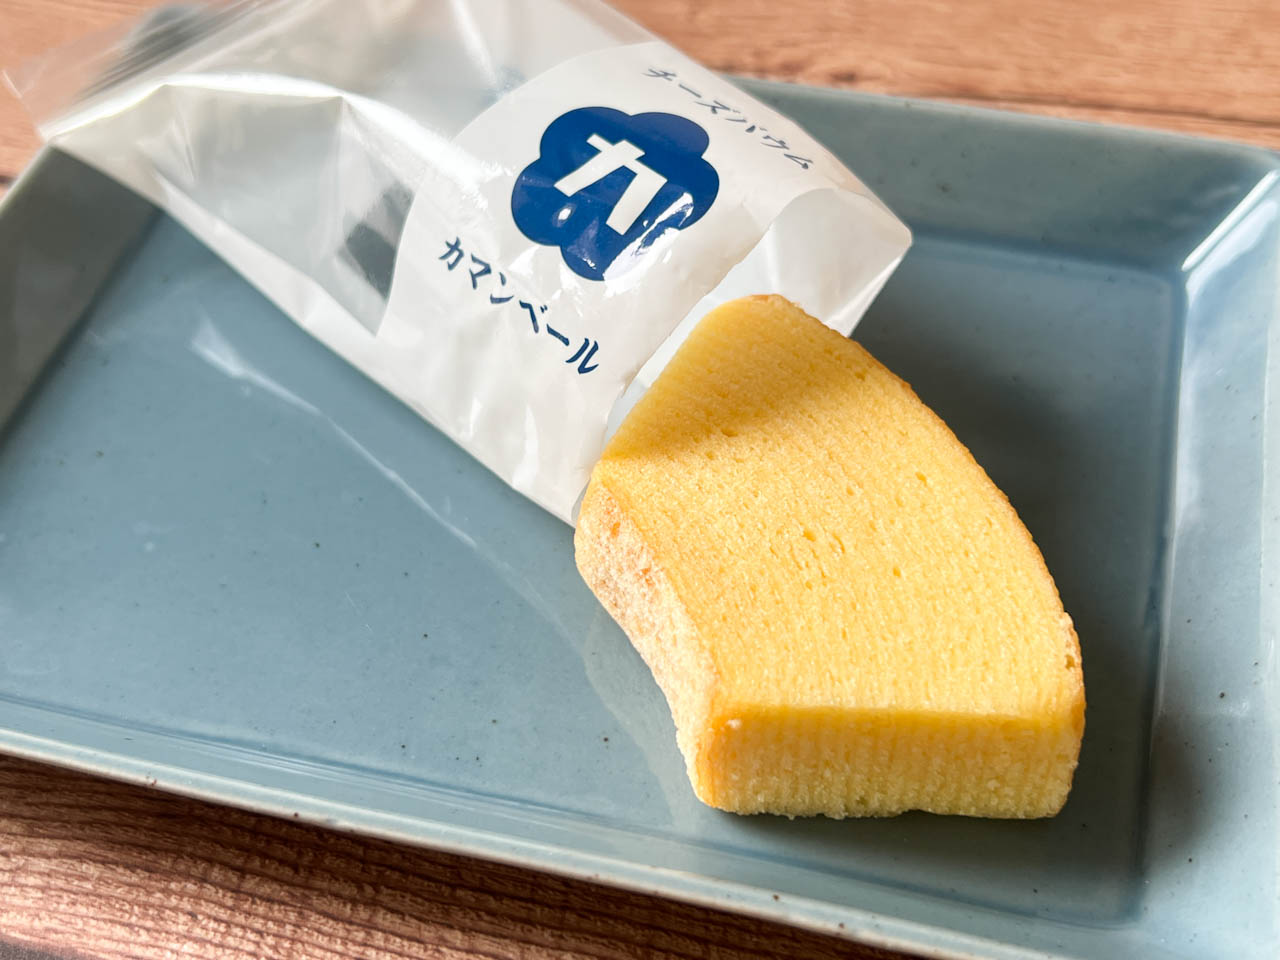 袋を開けると、その瞬間からチーズの香りが漂います